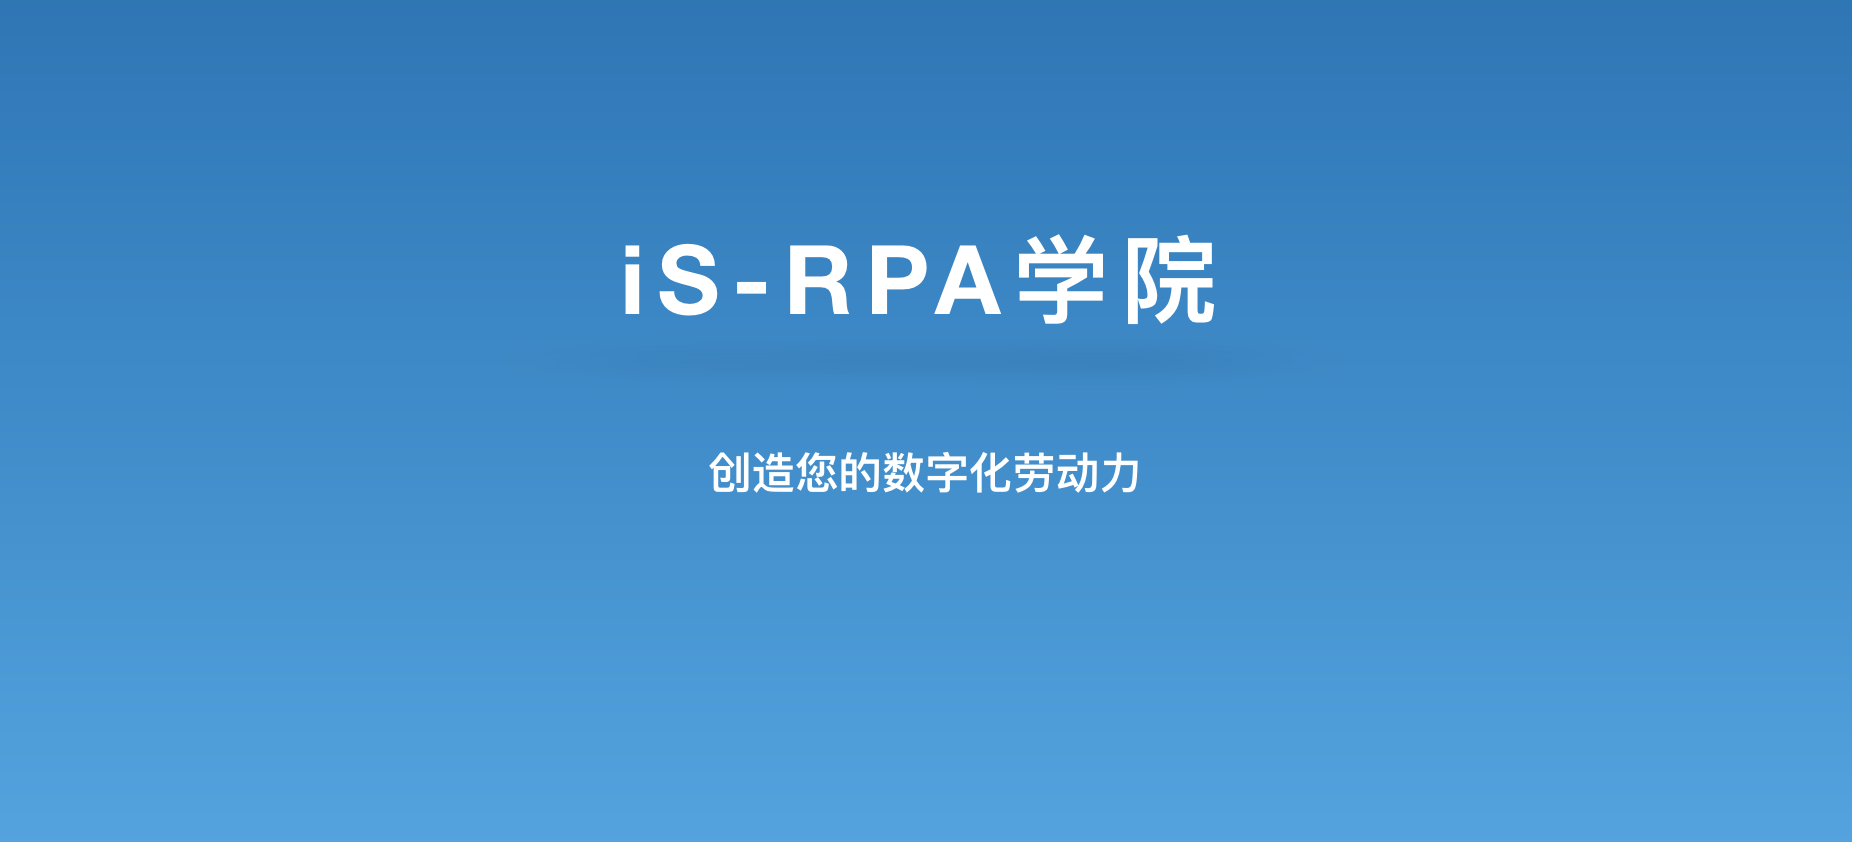 iS-RPA 学院 3 月份培训课程计划